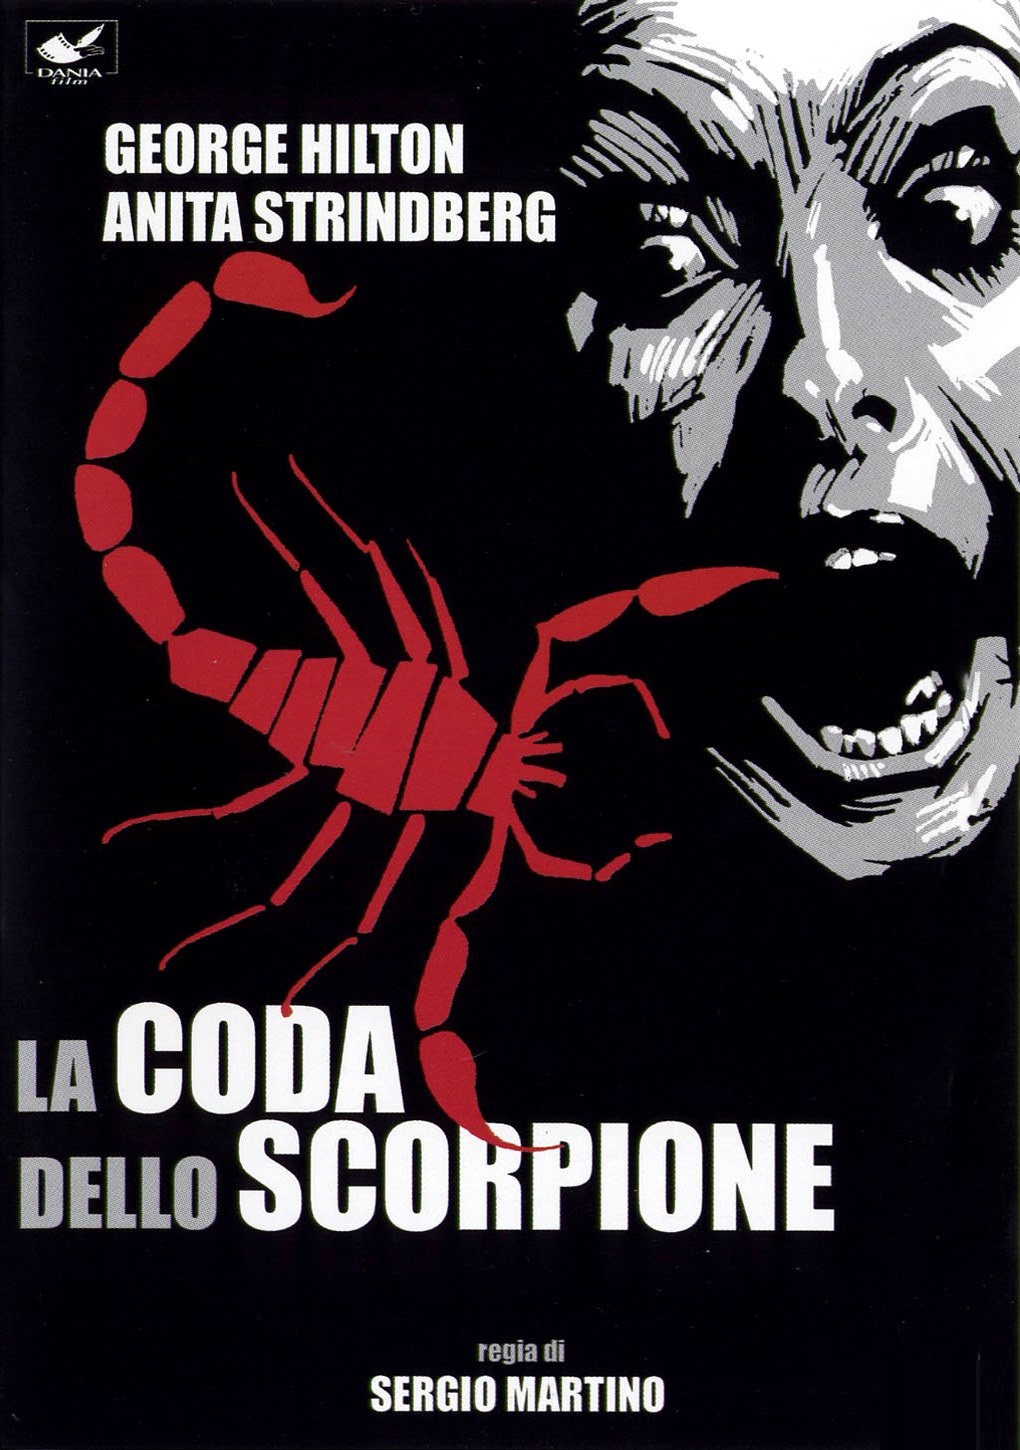 La coda dello scorpione [HD] (1971)